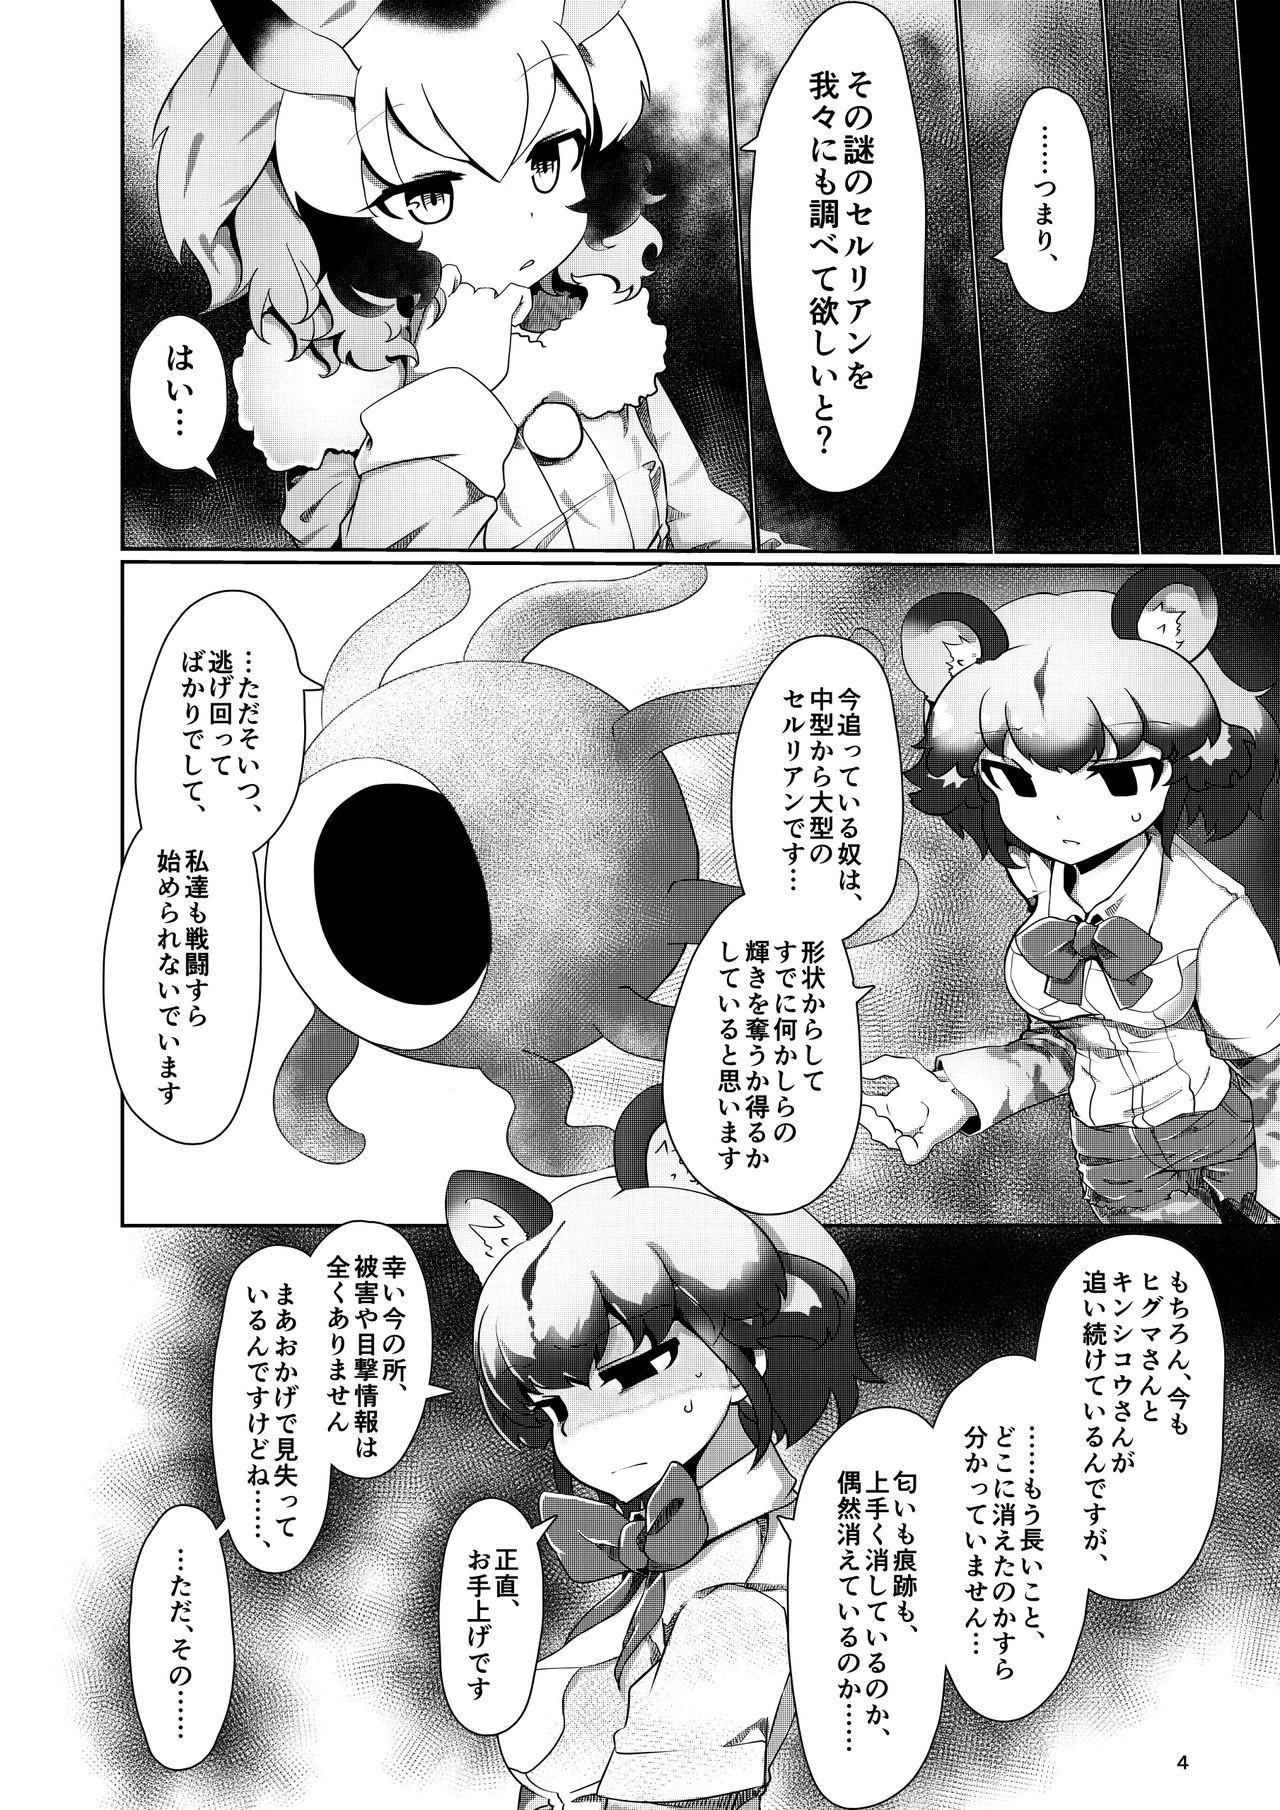 18yo APPLE WOLF 0007 Kono wa Ecchi 4 - Kemono friends Toes - Page 4